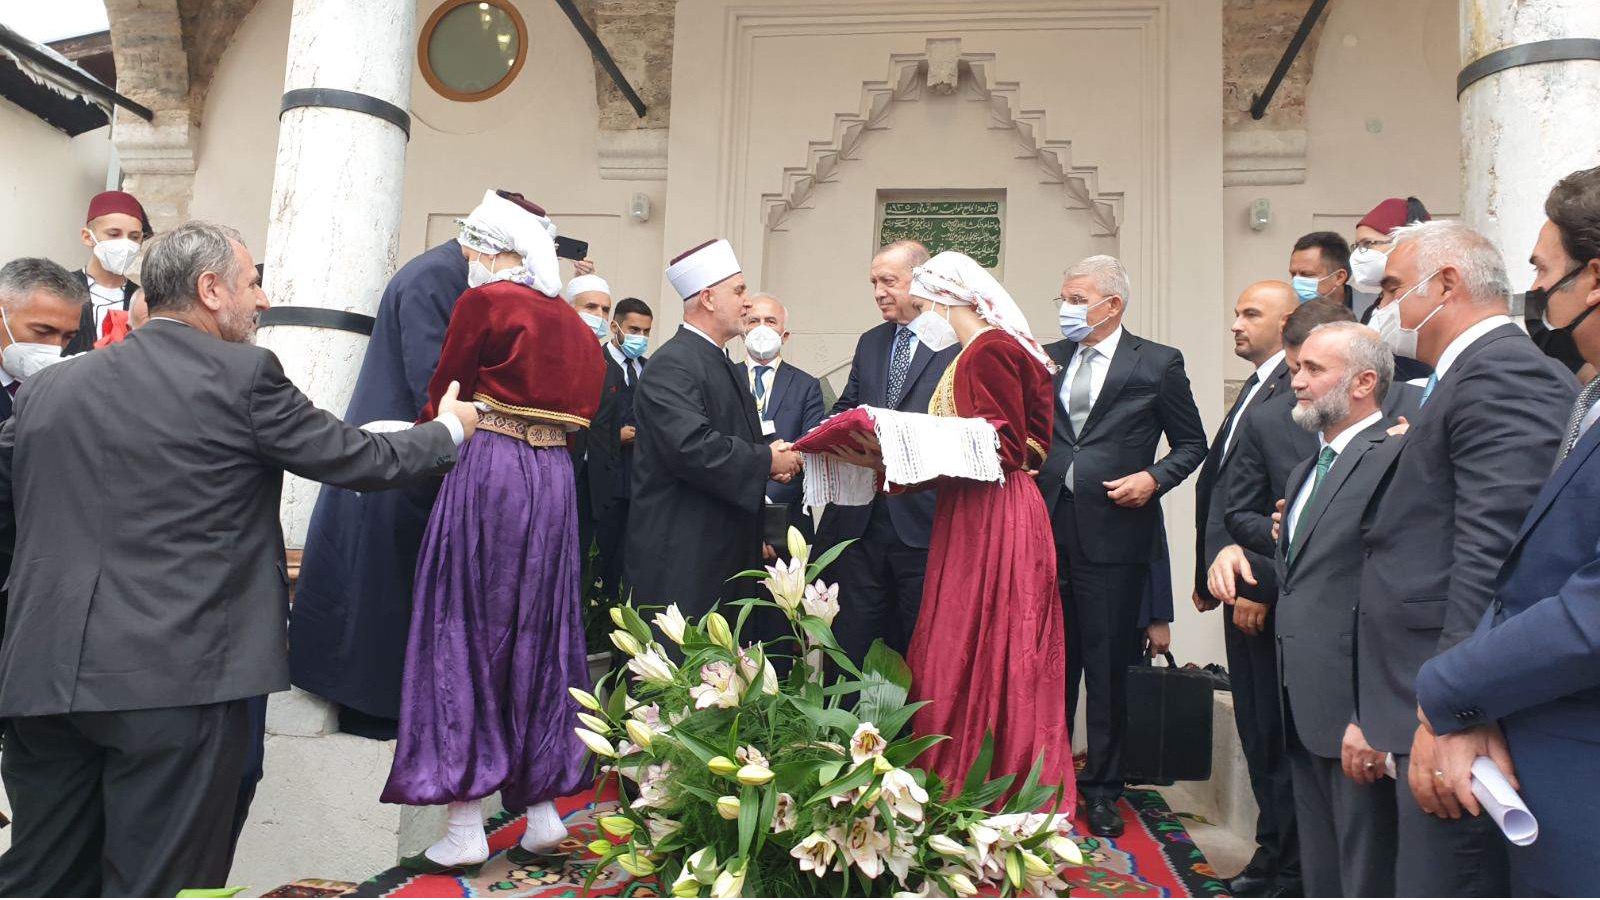 predsjednik-turske-erdogan-i-reisu-l-ulema-kavazovic-svecano-otvorili-bascarsijsku-dzamiju73729.jpg